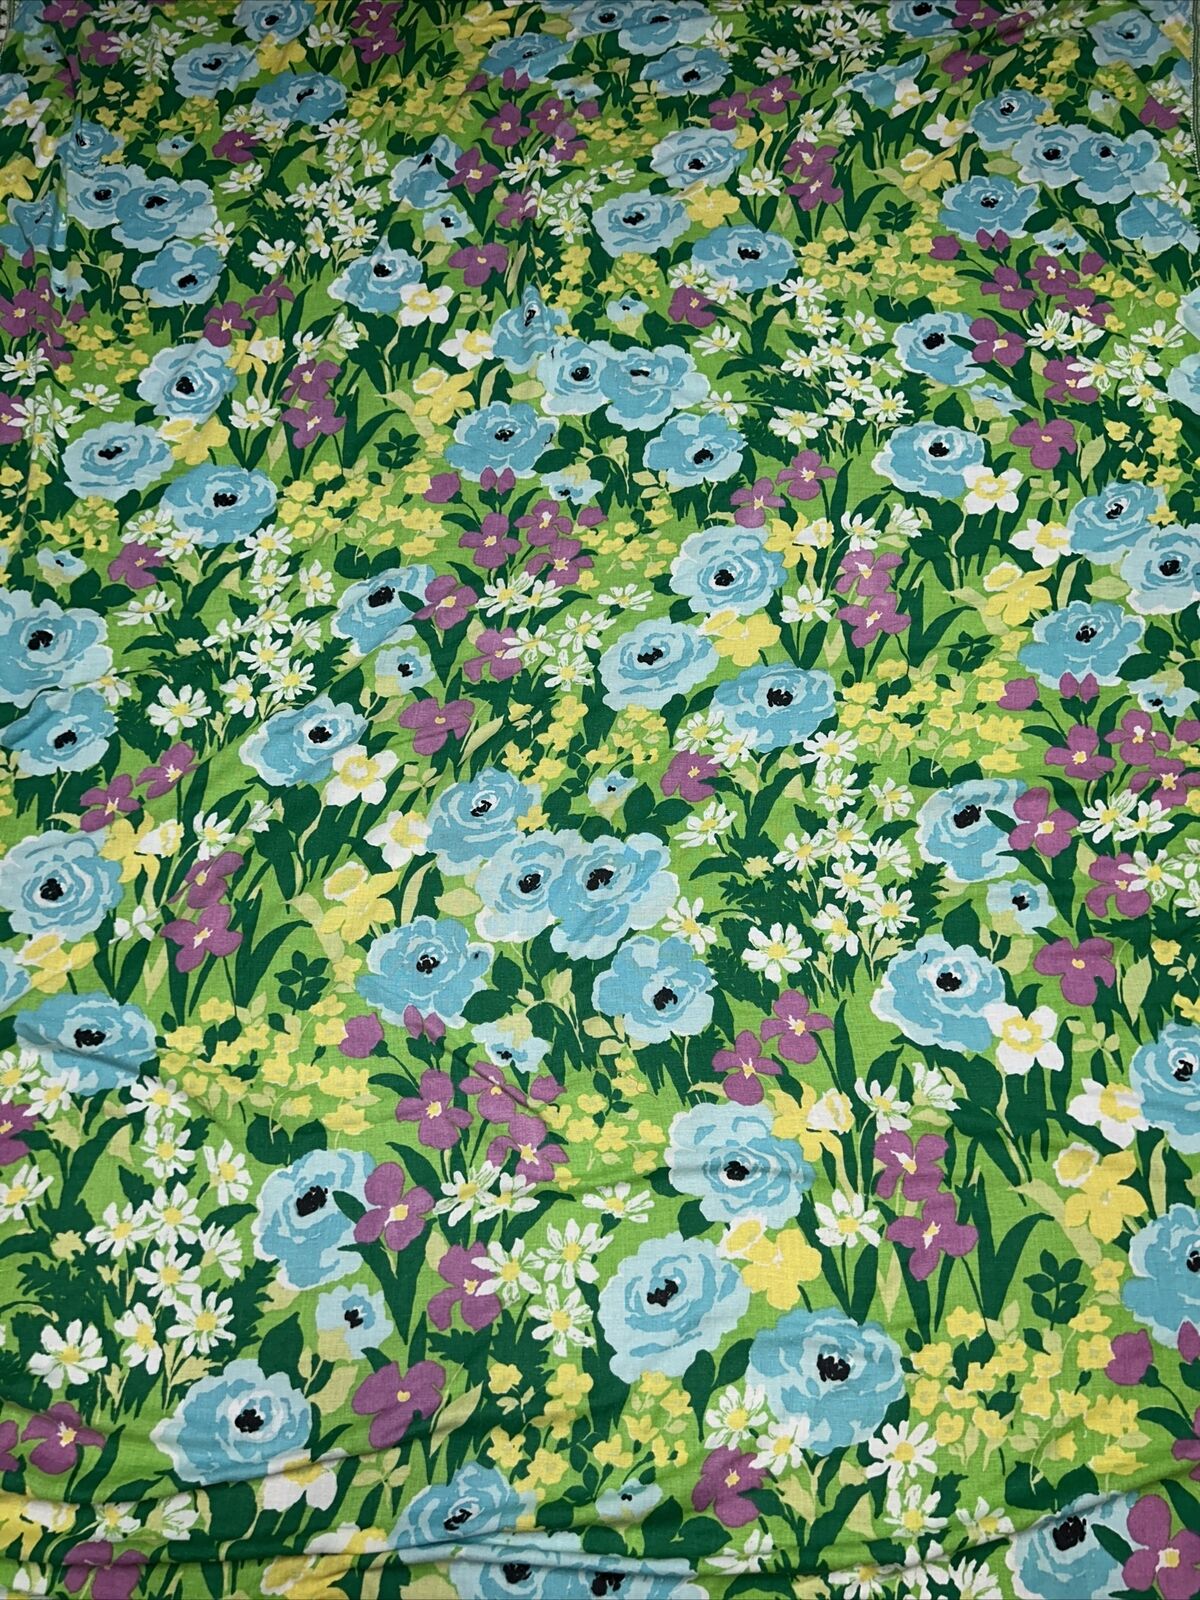 Sears Vintage Mod Floral Blue Purple Green Fringe Bed Spread Coverlet Blanket